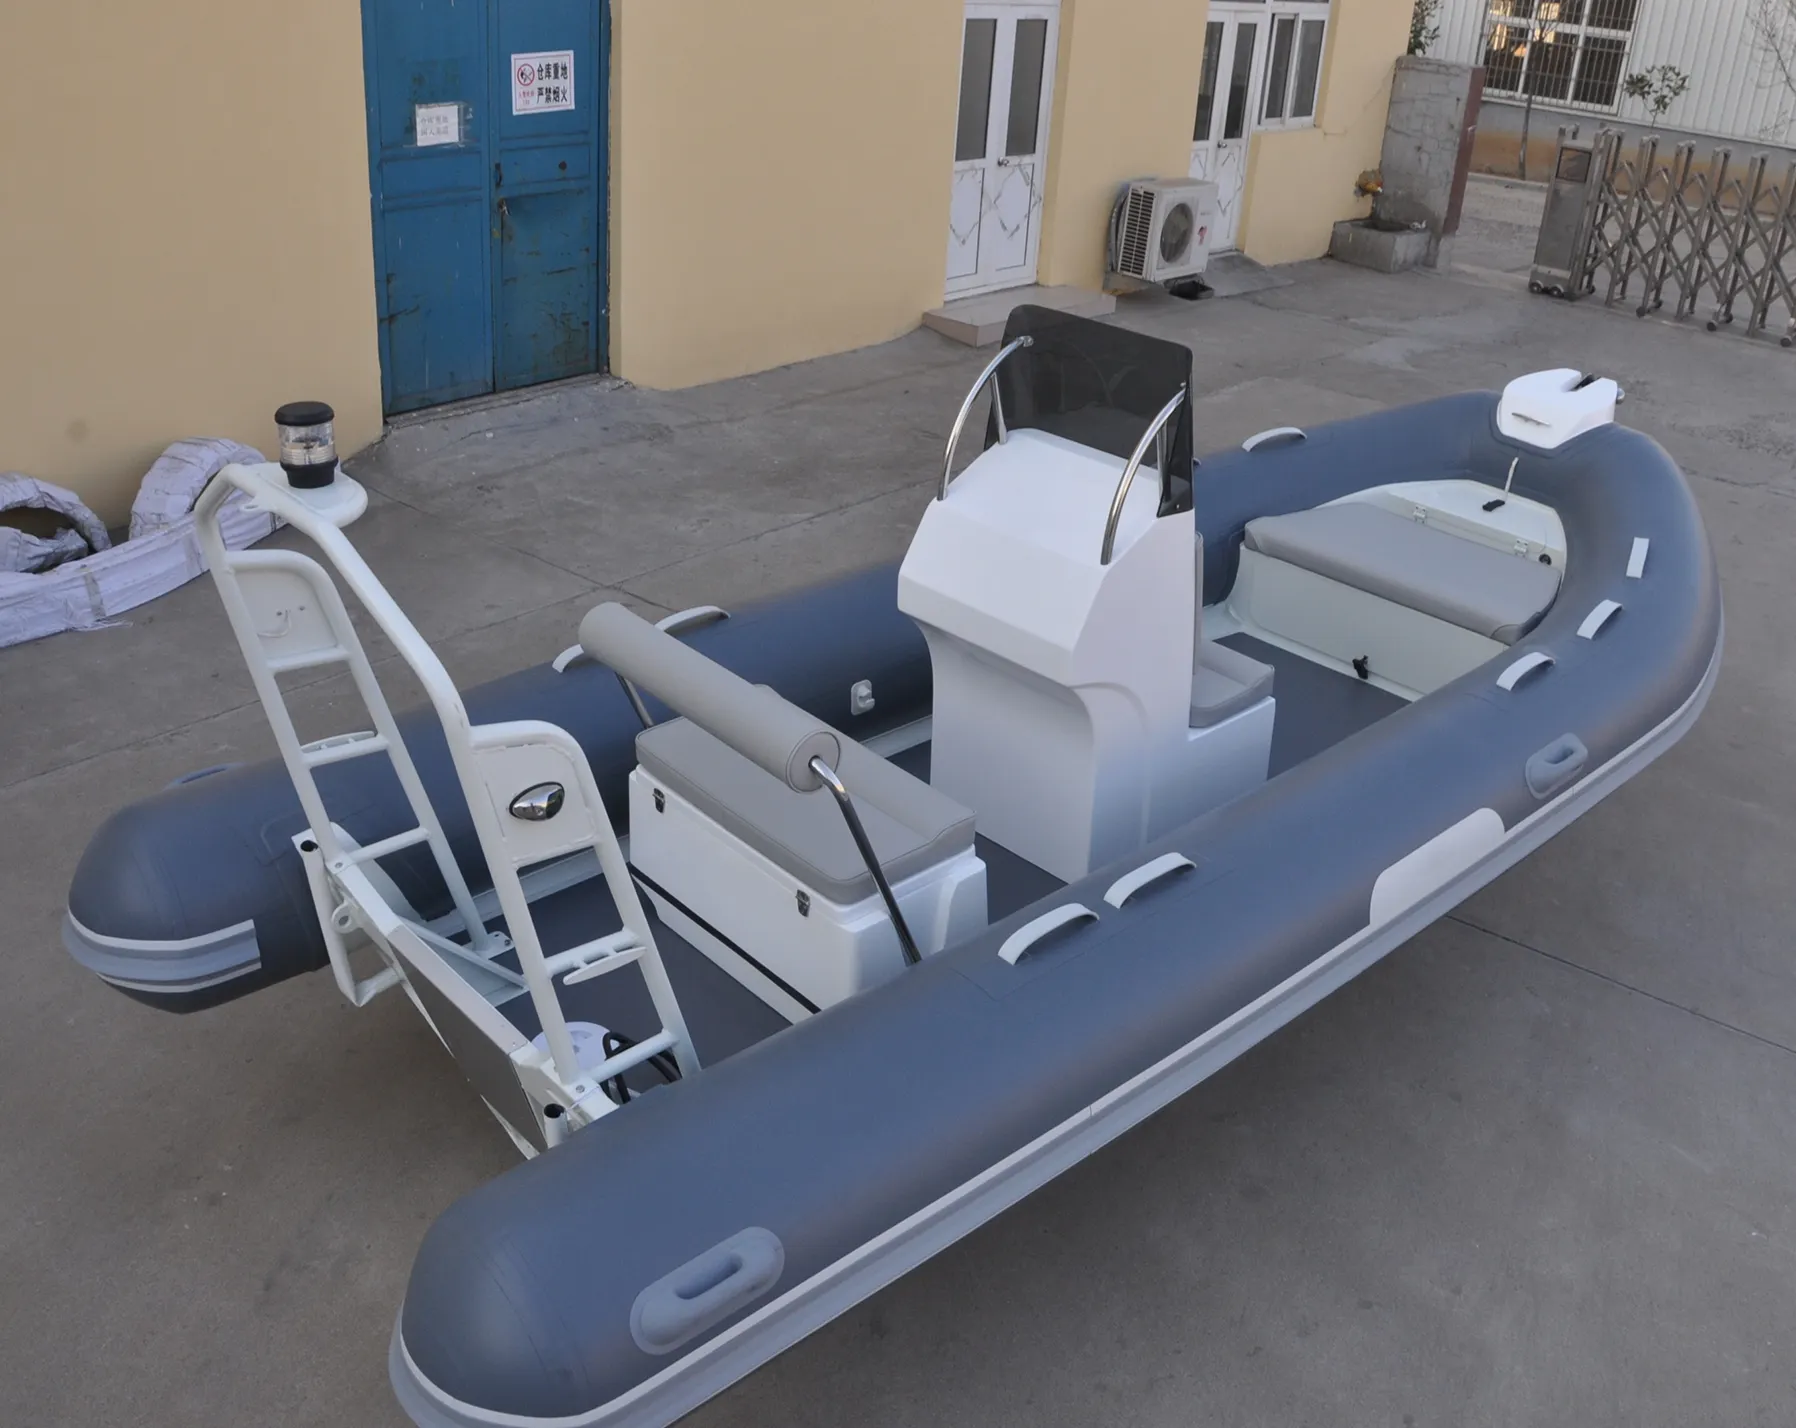 Liya 3.6m aluminum open rib boat mini yacht rowing boat